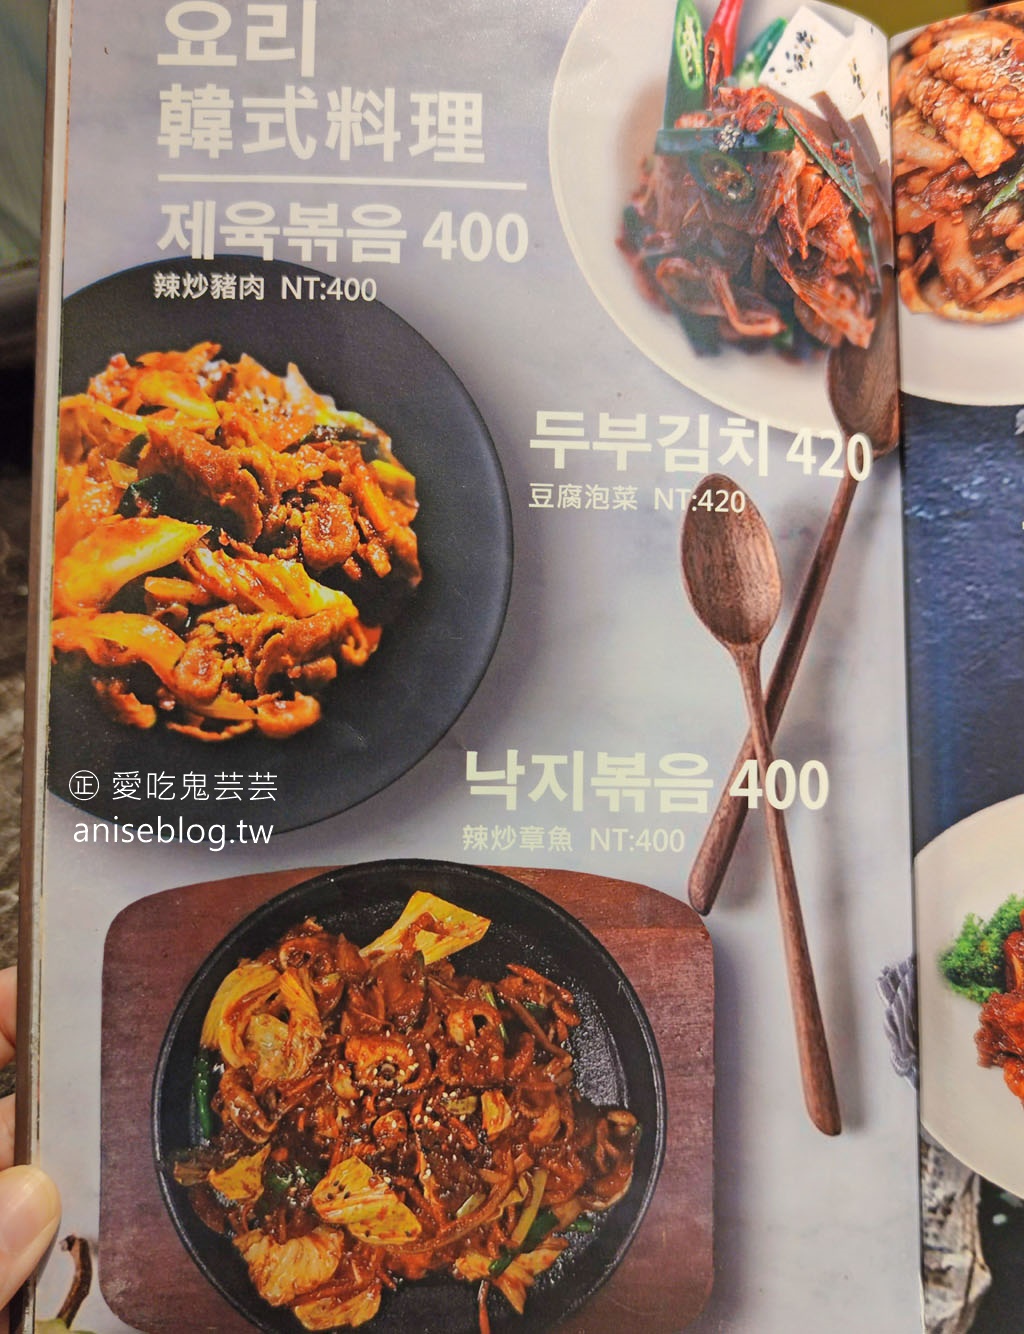 韓食堂，台北也吃得到韓國豬腳！另外大推涼麵、辣魷魚 (南京復興美食)(文末菜單)